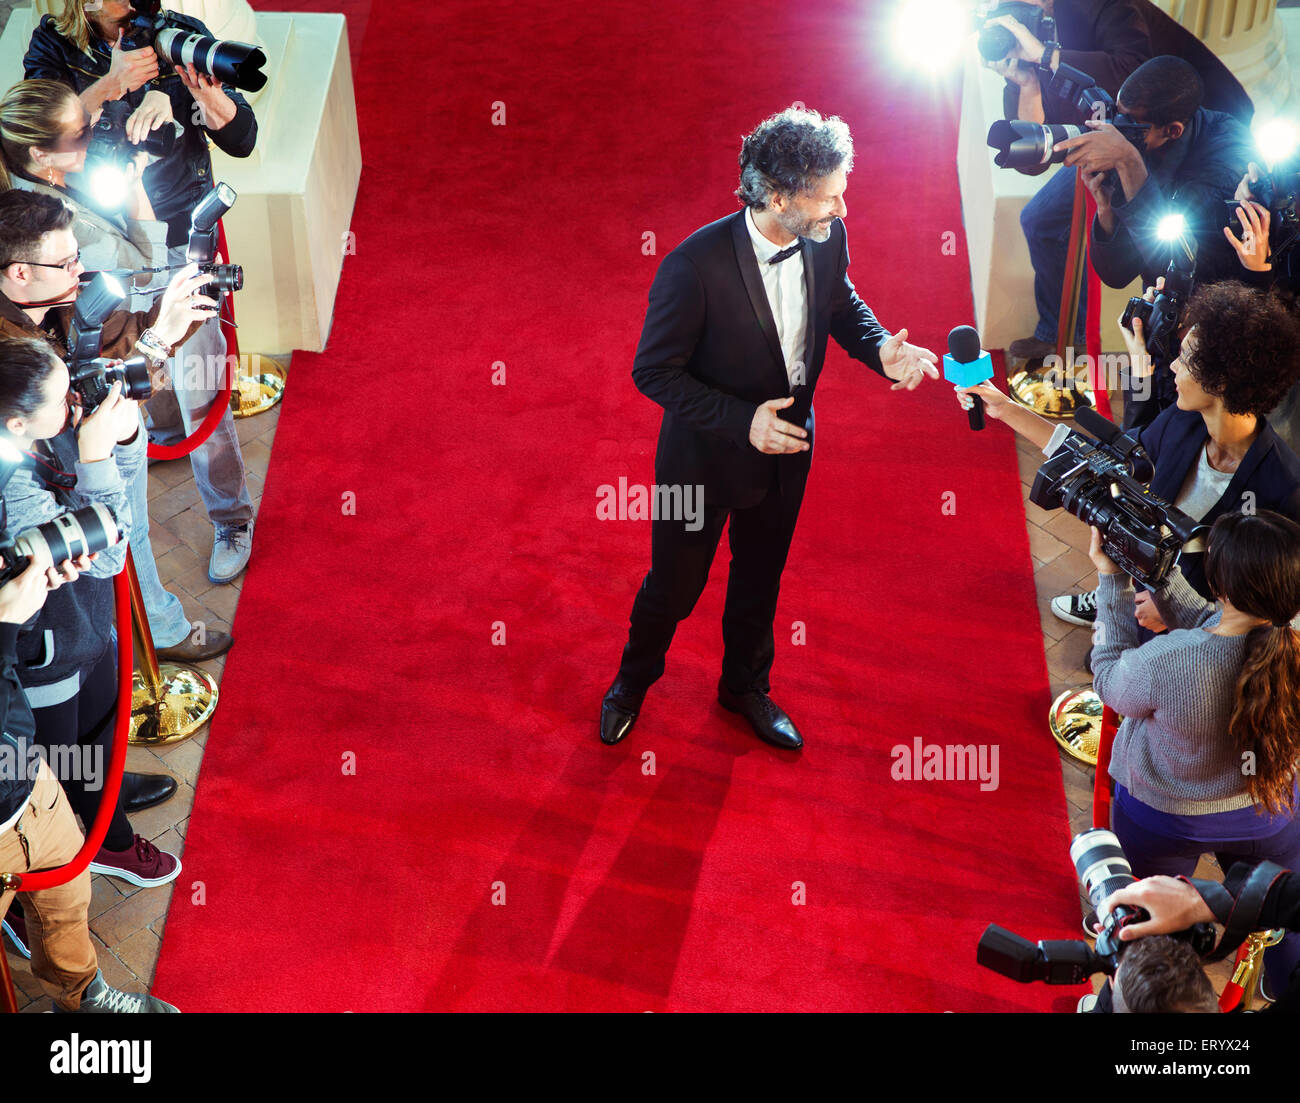 Celebrity sur tapis rouge d'être interviewé et photographié par les paparazzi Banque D'Images